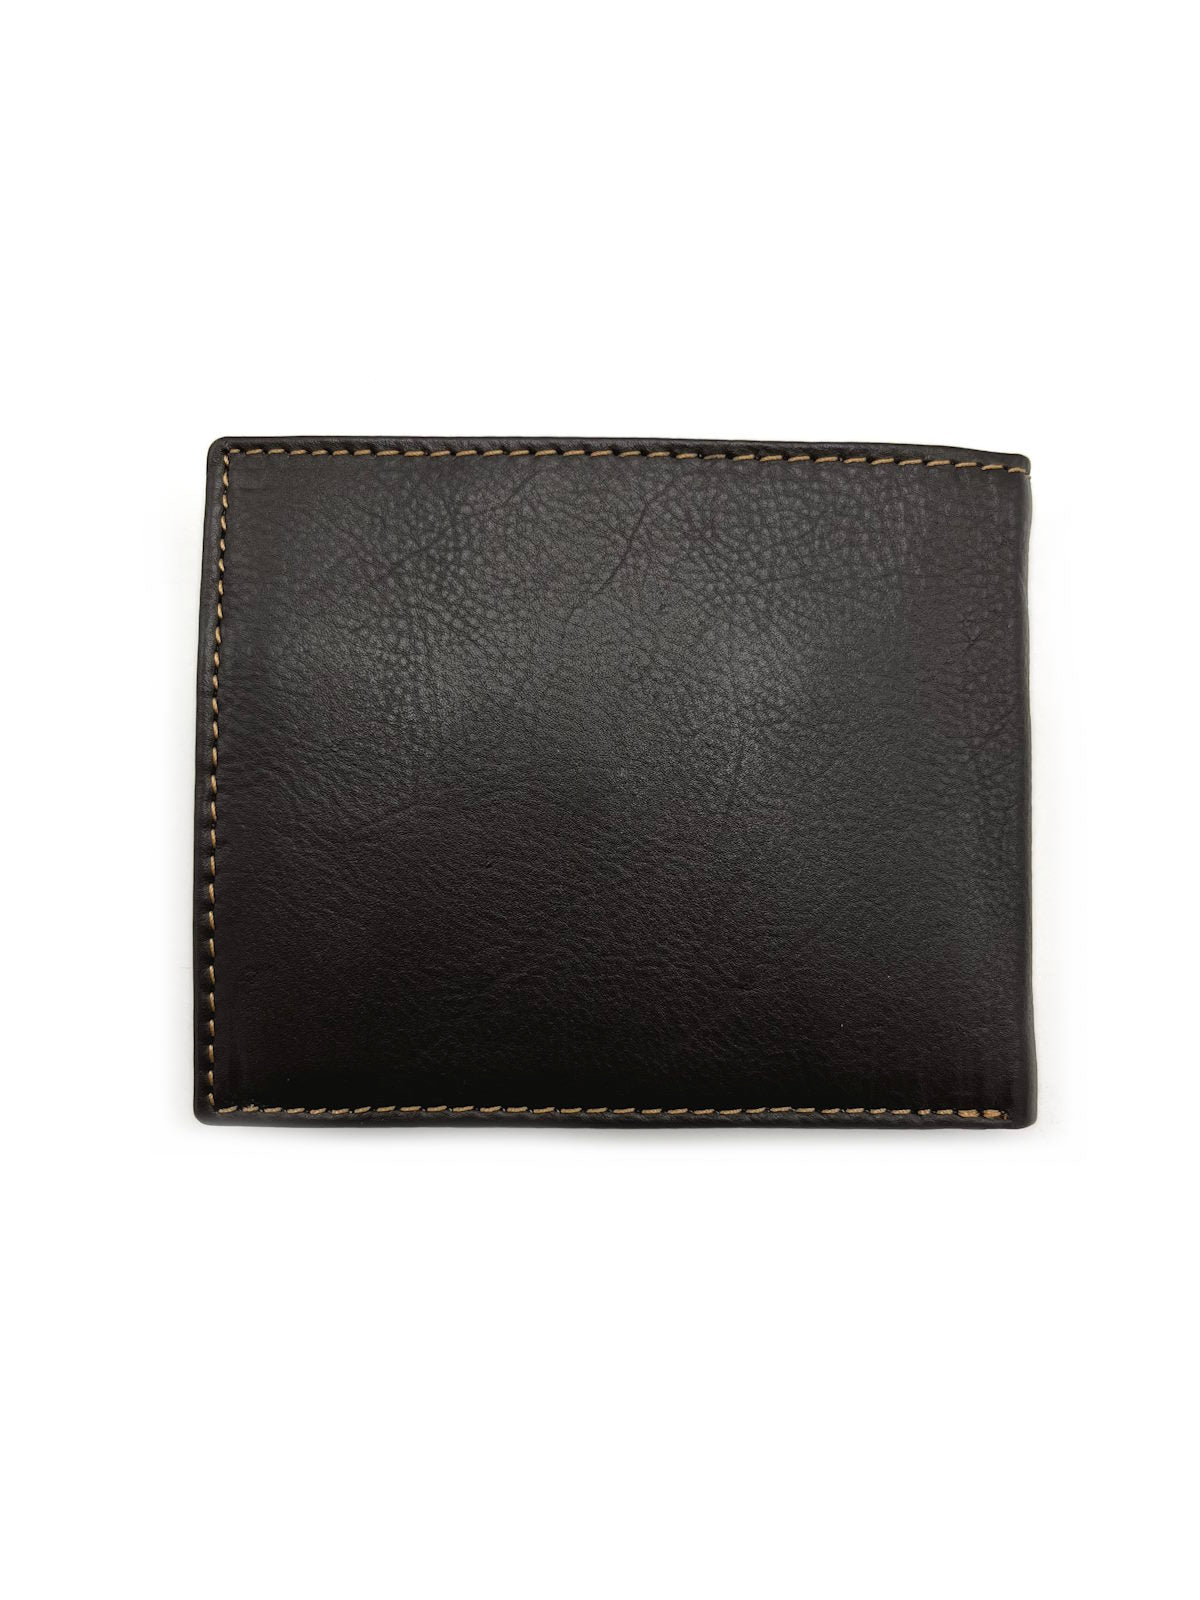 Genuine leather Wallet, Brand GMV, art. GMV4015-2